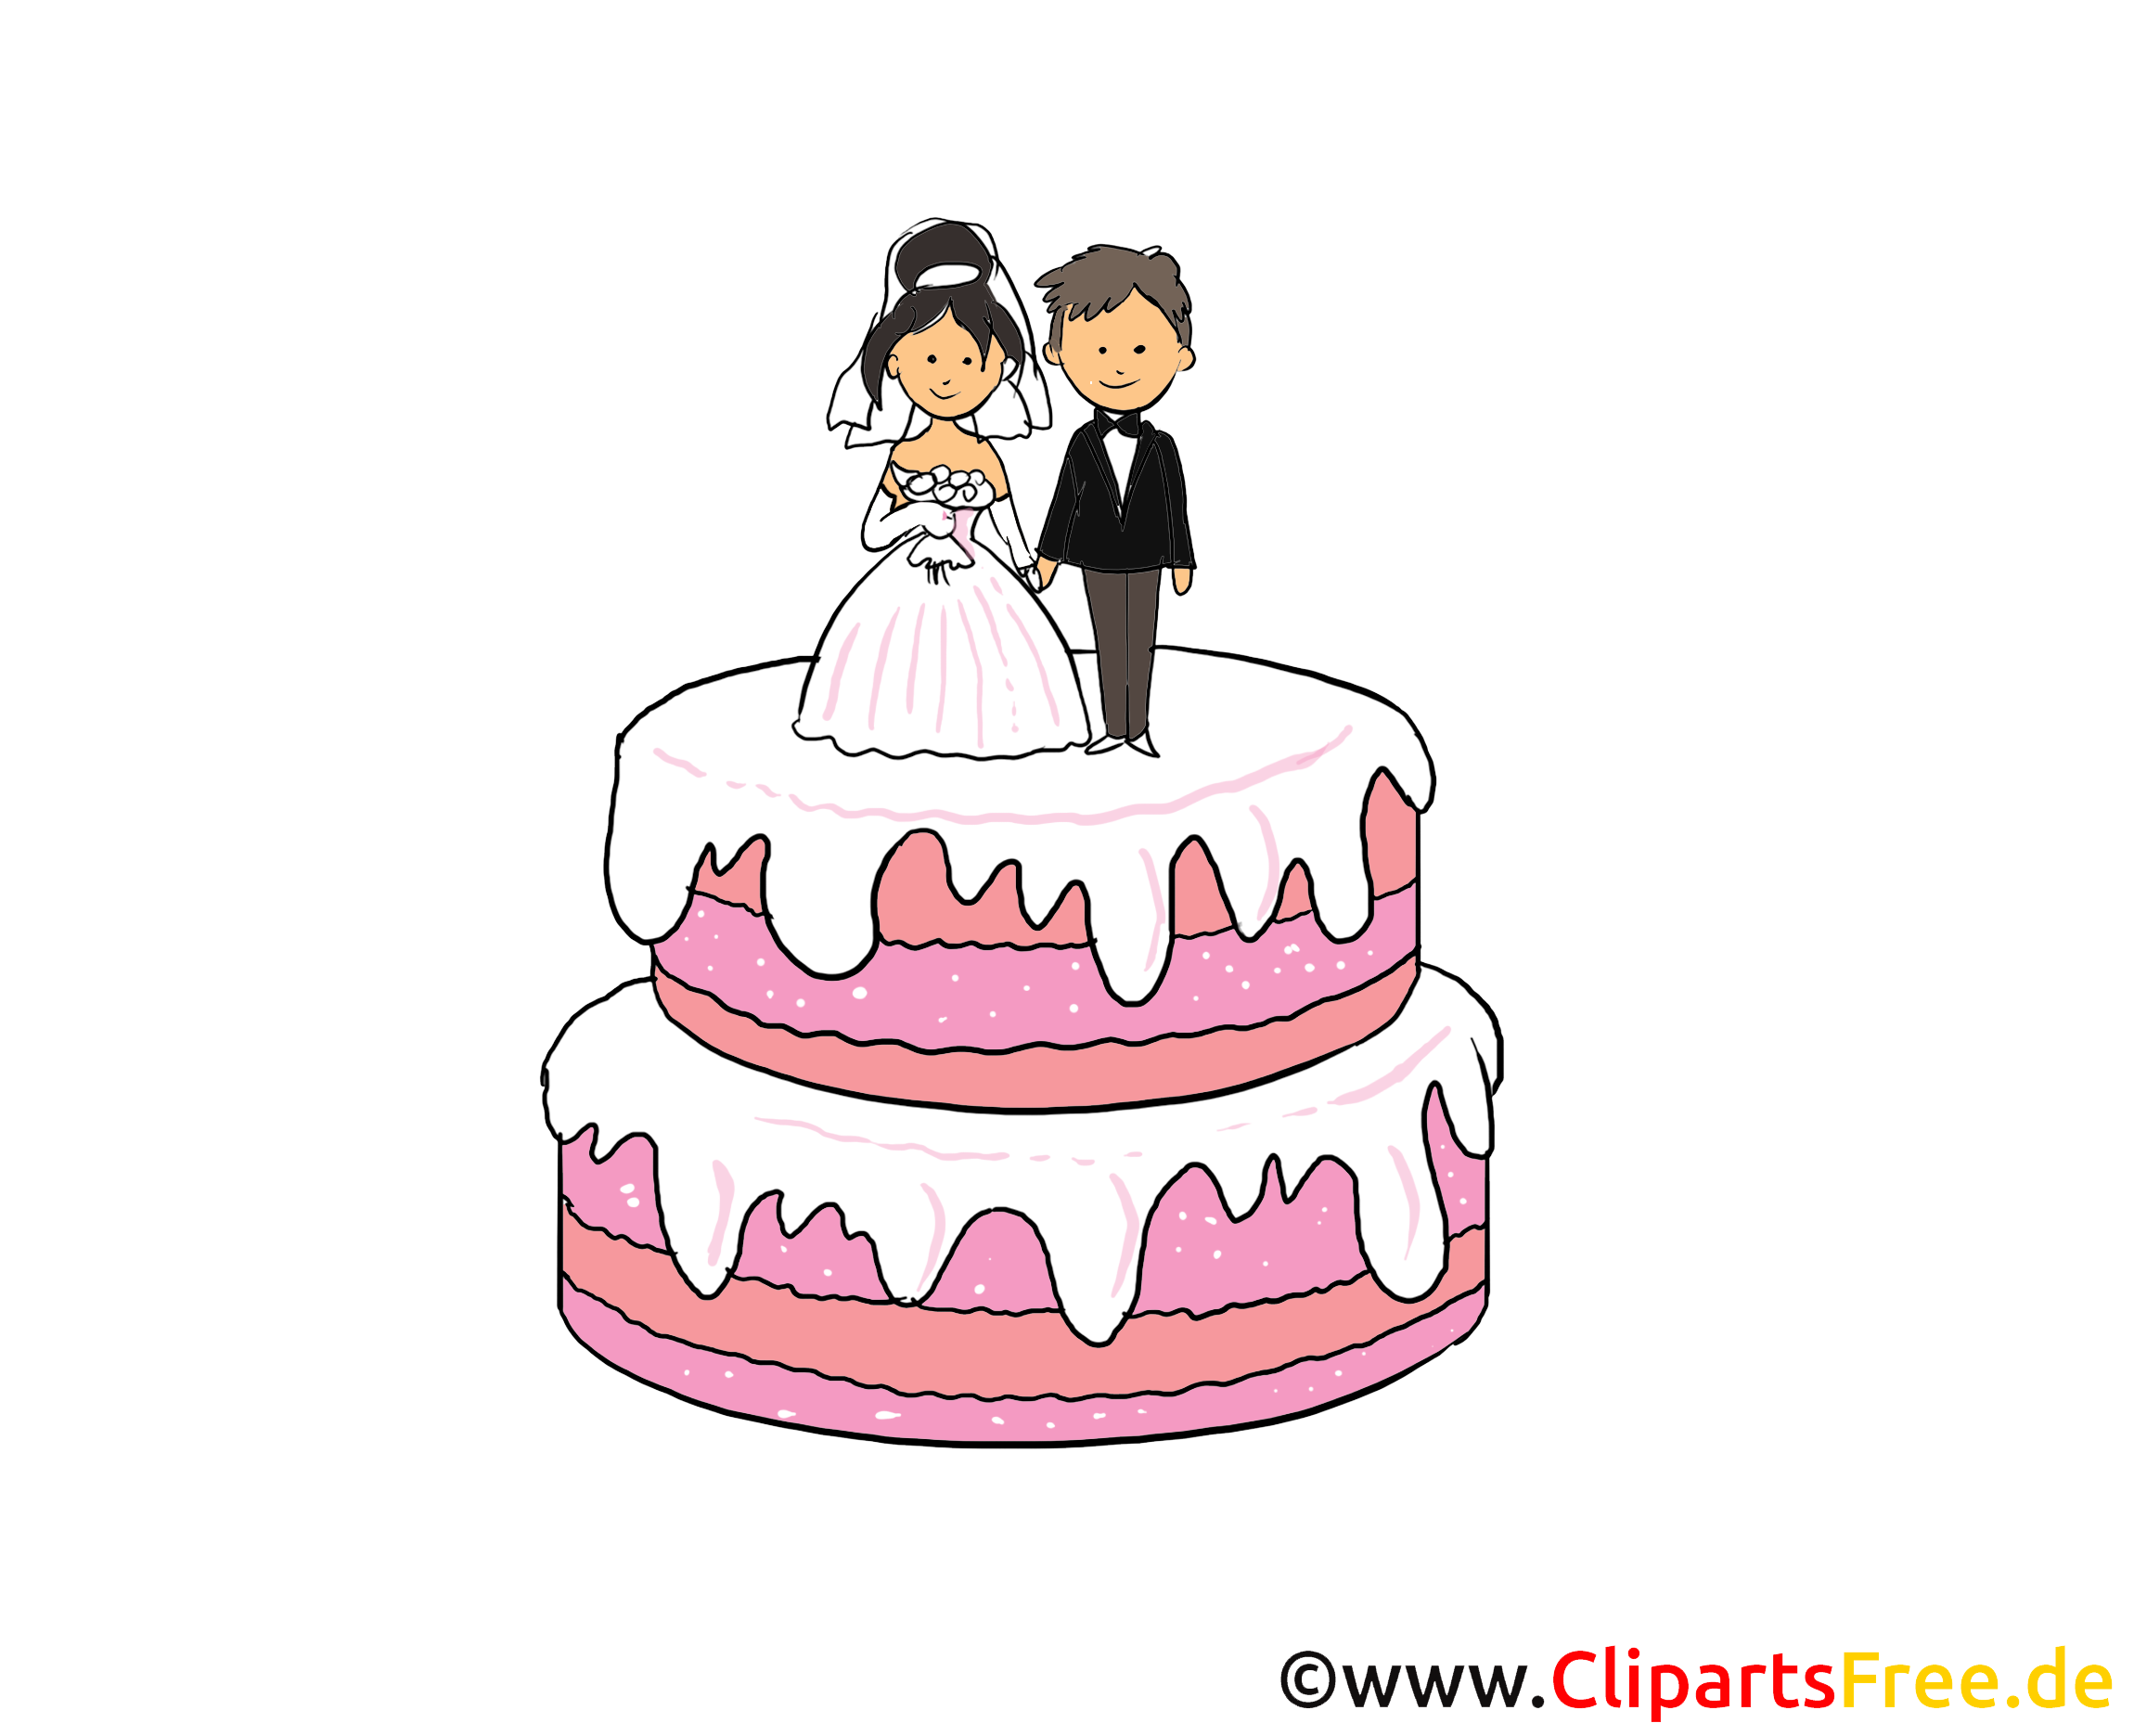 image clipart mariage gratuit - photo #16